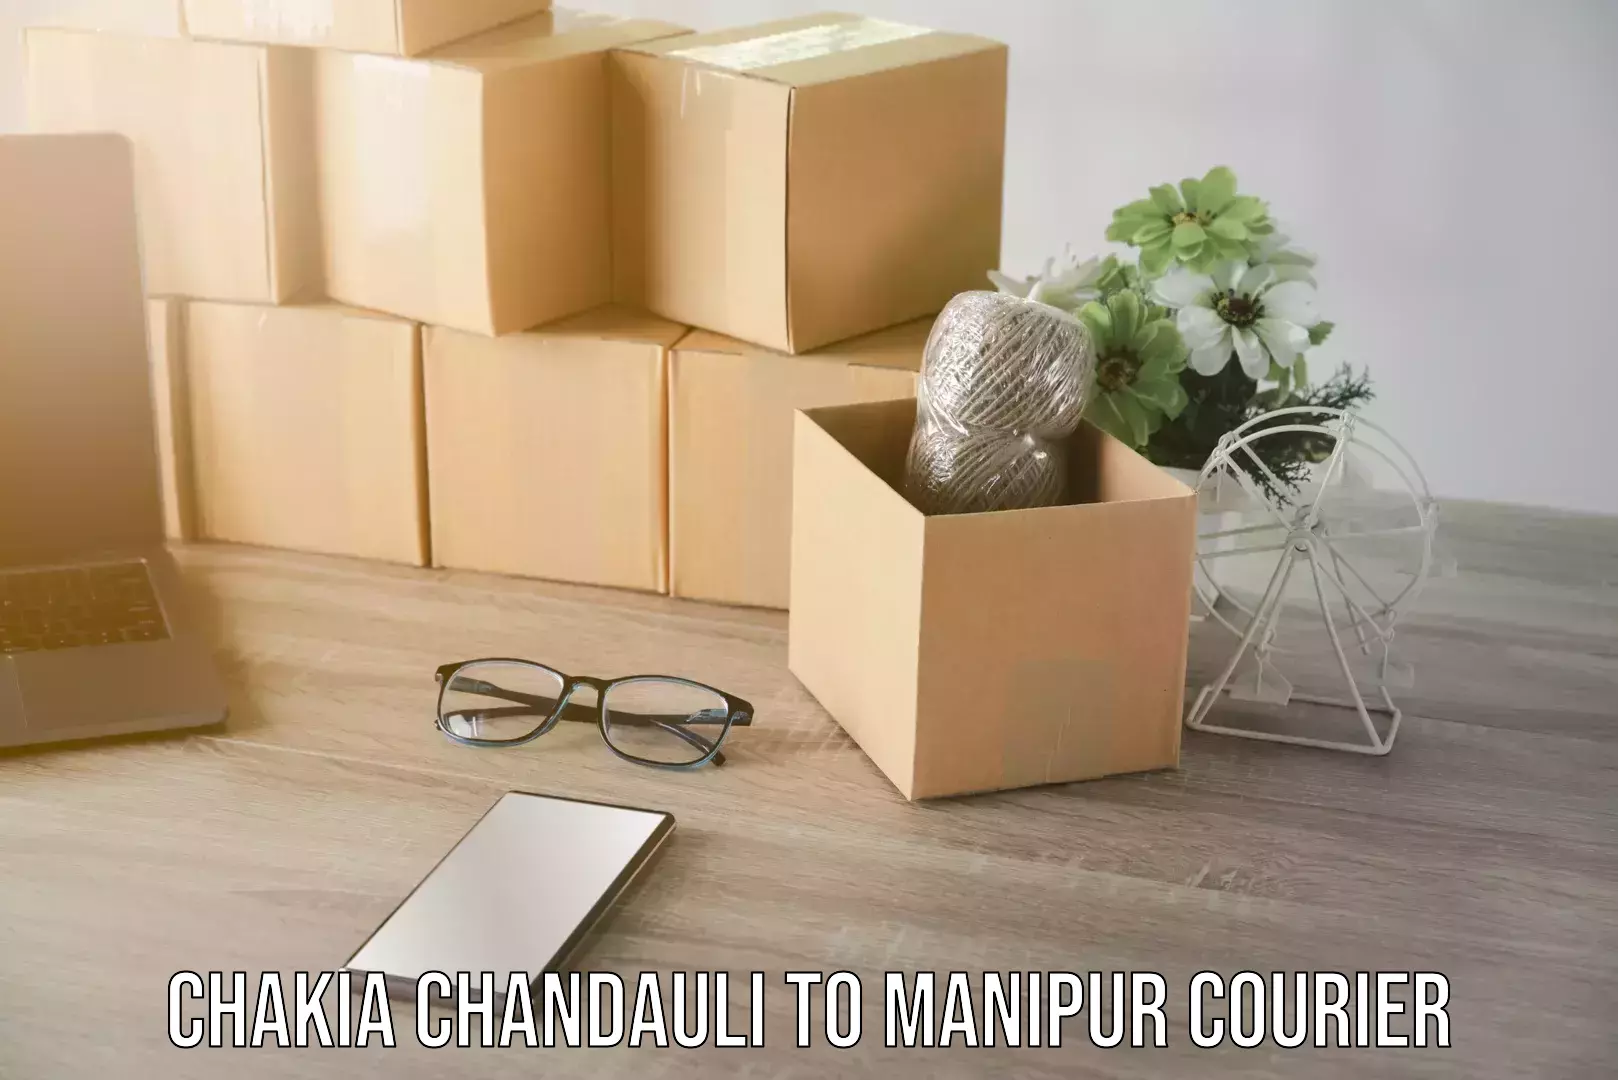 Door-to-door freight service Chakia Chandauli to Manipur